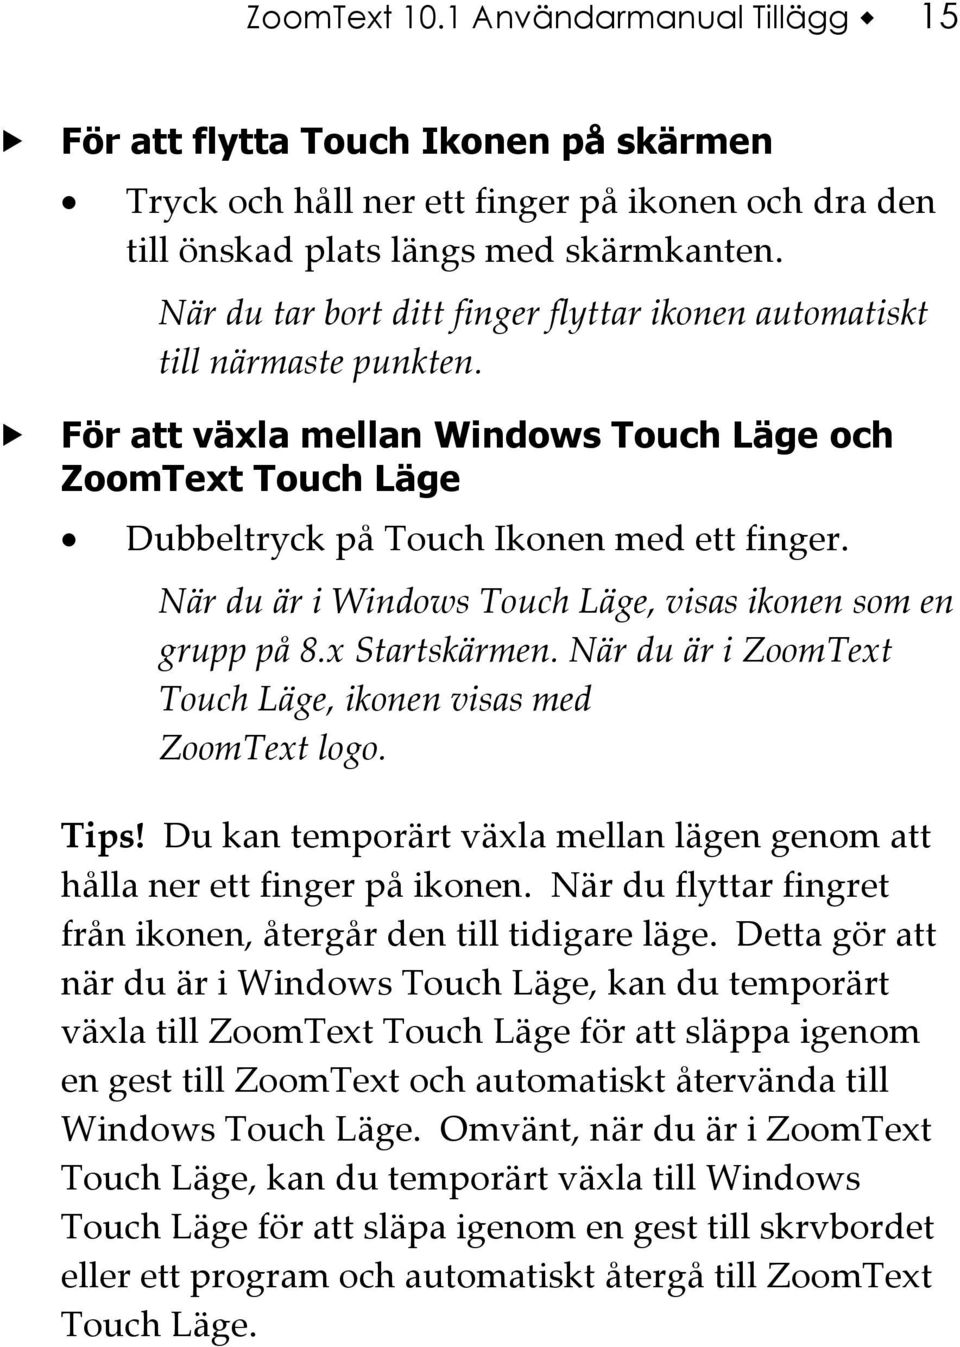 När du är i Windows Touch Läge, visas ikonen som en grupp på 8.x Startskärmen. När du är i ZoomText Touch Läge, ikonen visas med ZoomText logo. Tips!